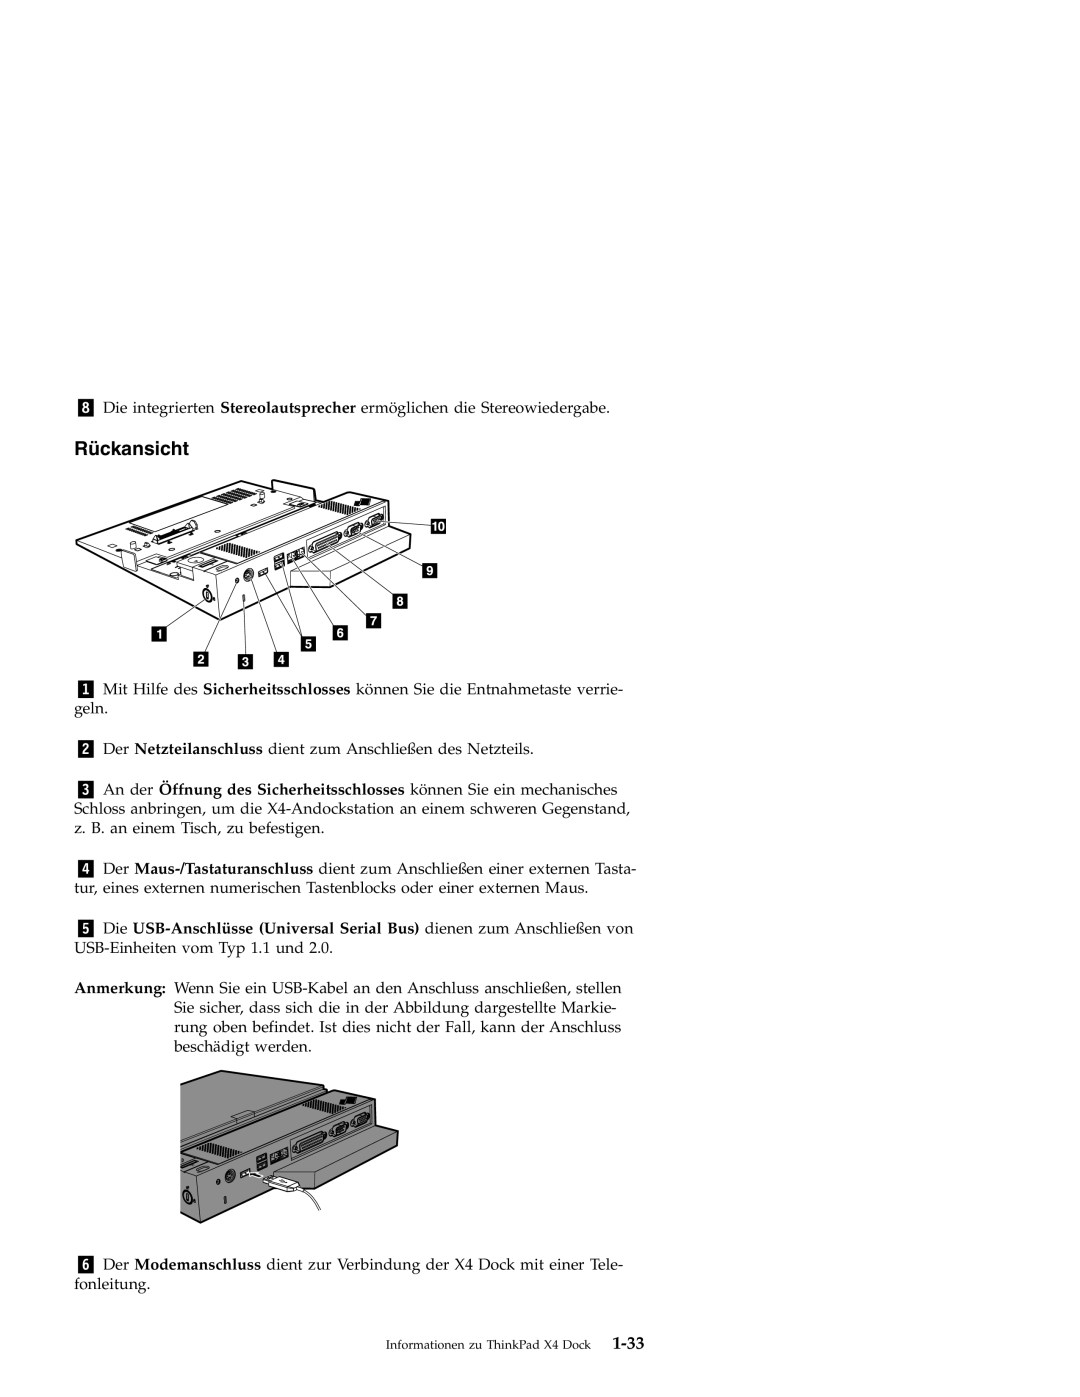 IBM X4 manual Rückansicht 